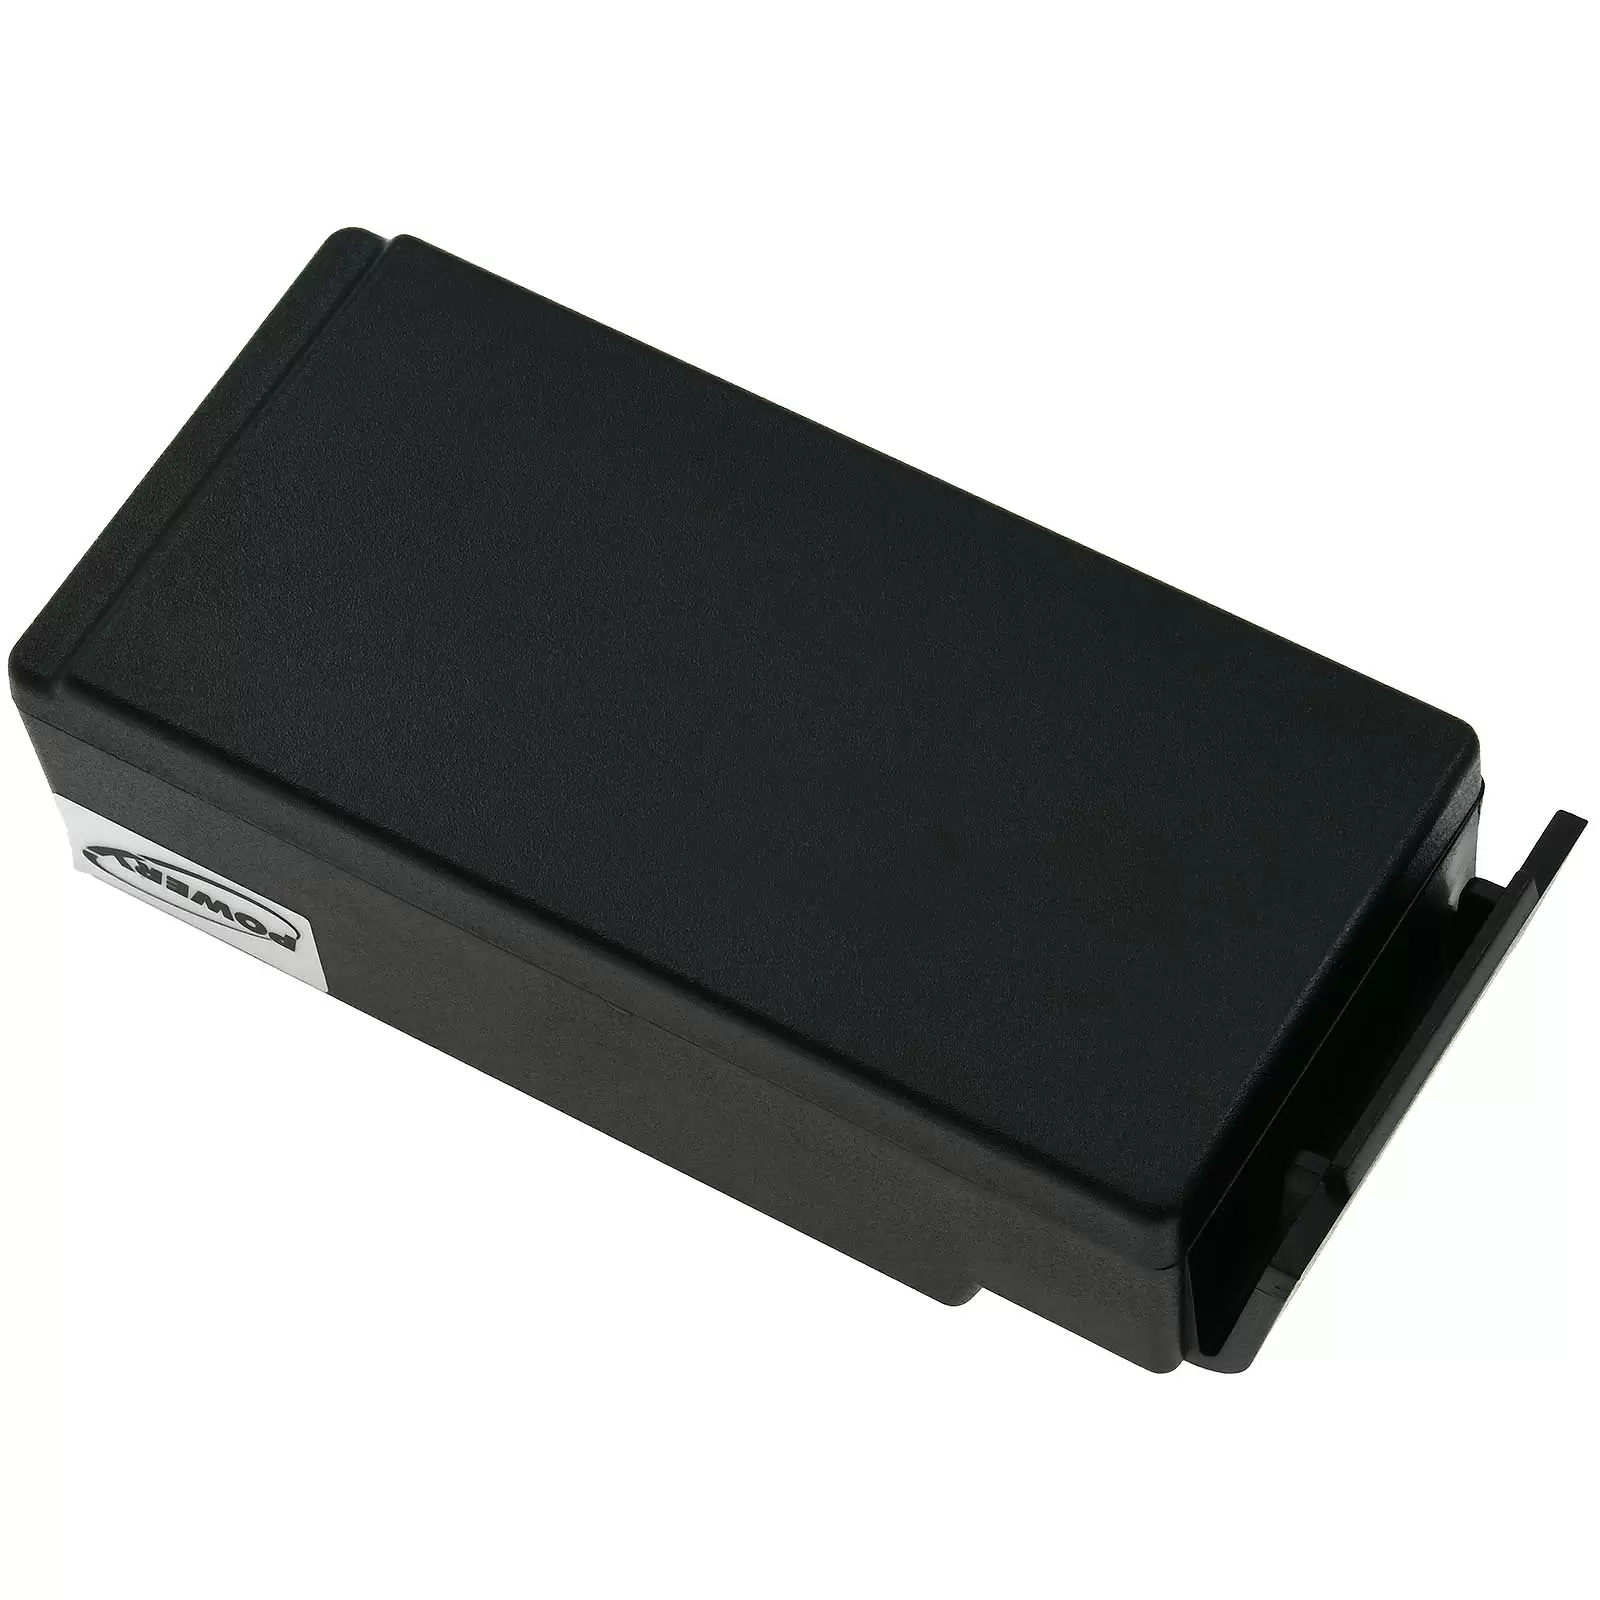 Powerakku für Kran-Funkfernsteuerung Cavotec MC-3000 / MC-3 / Typ M5-1051-3600